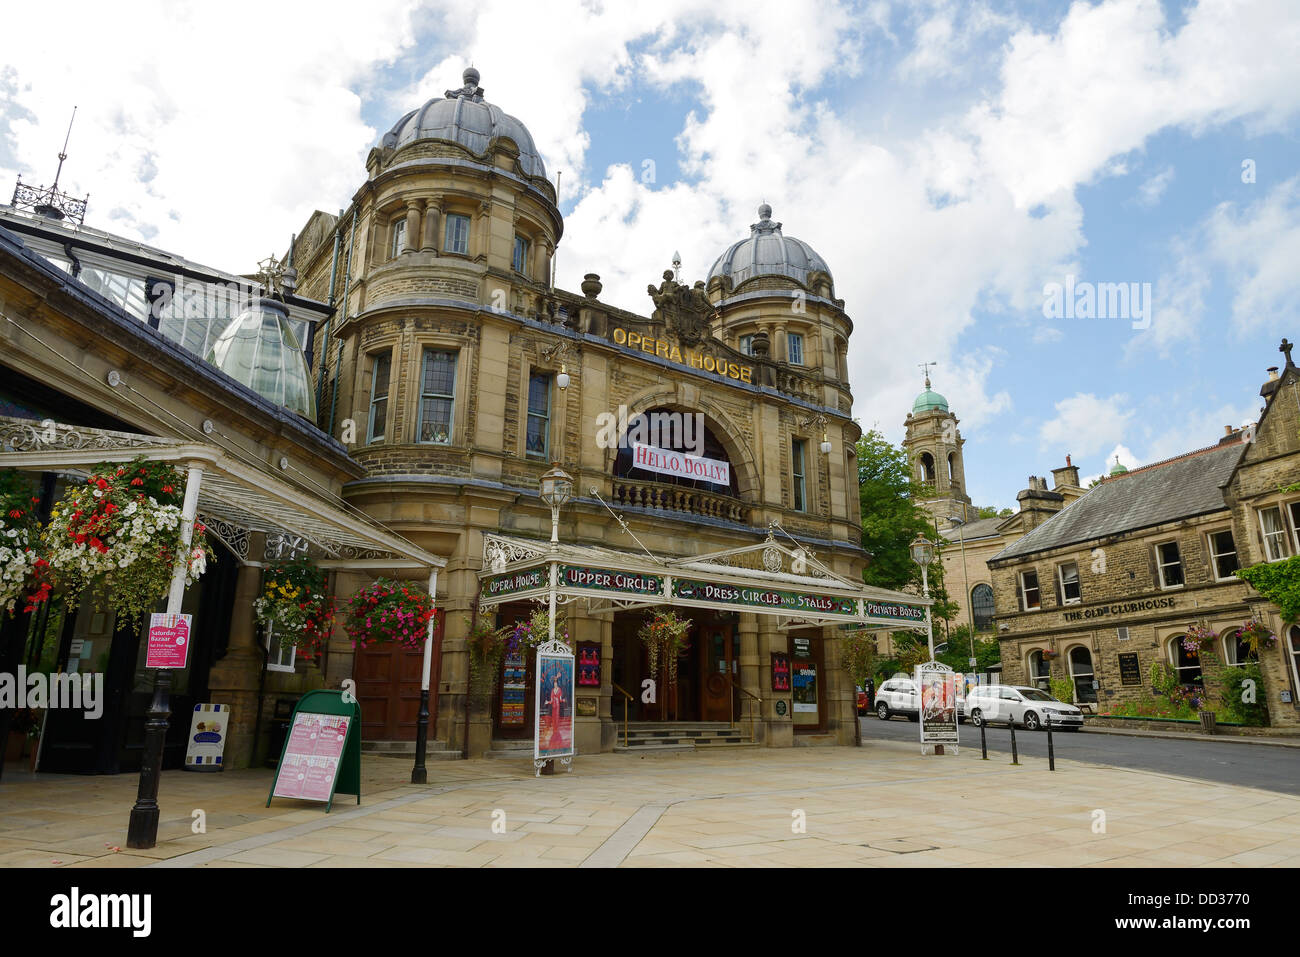 Buxton Opera House Facade UK Stock Photo